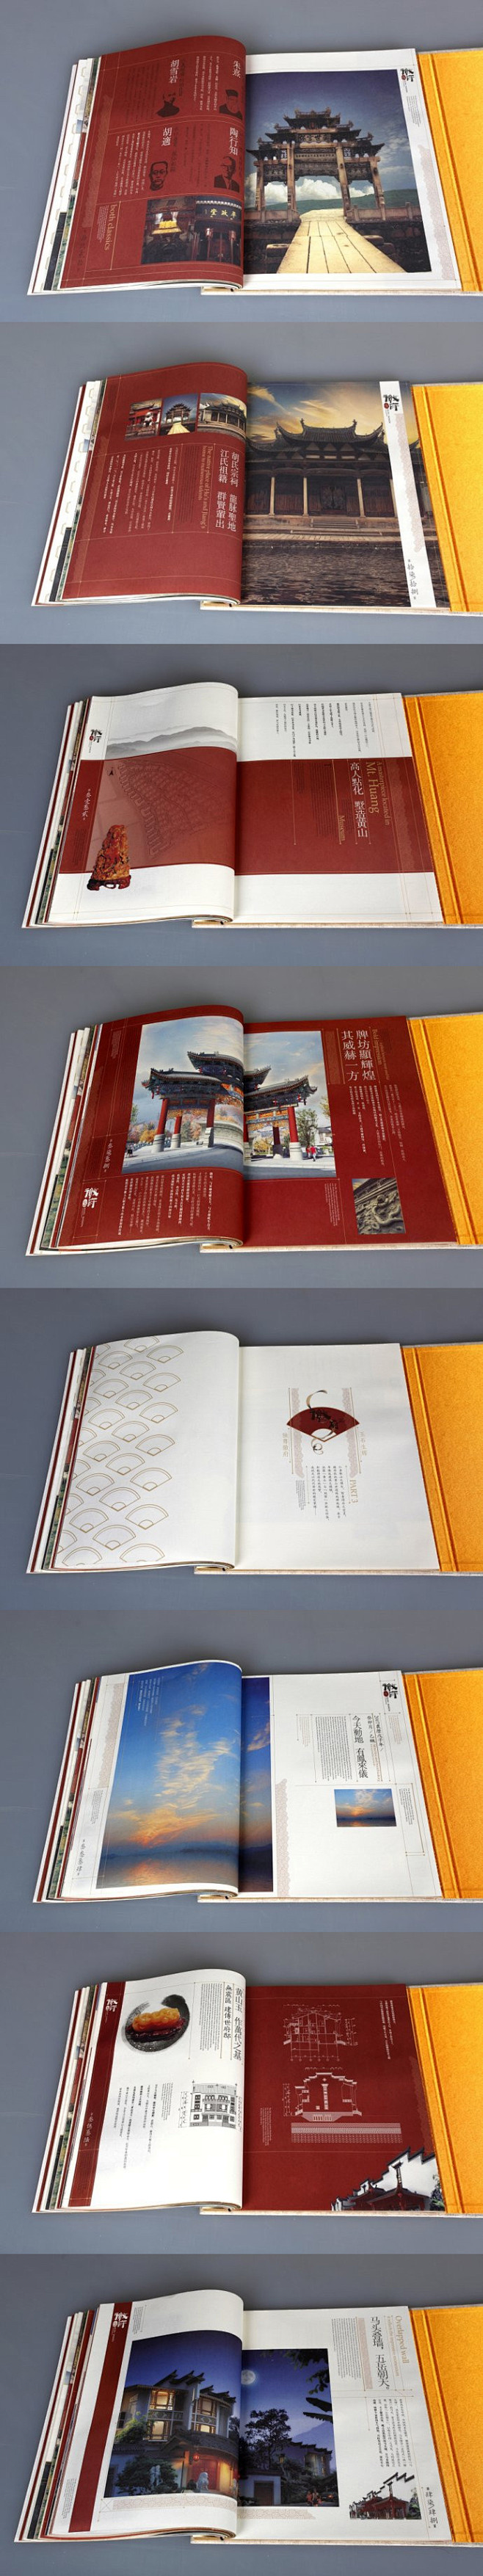 中国风画册印刷版式设计欣赏-3